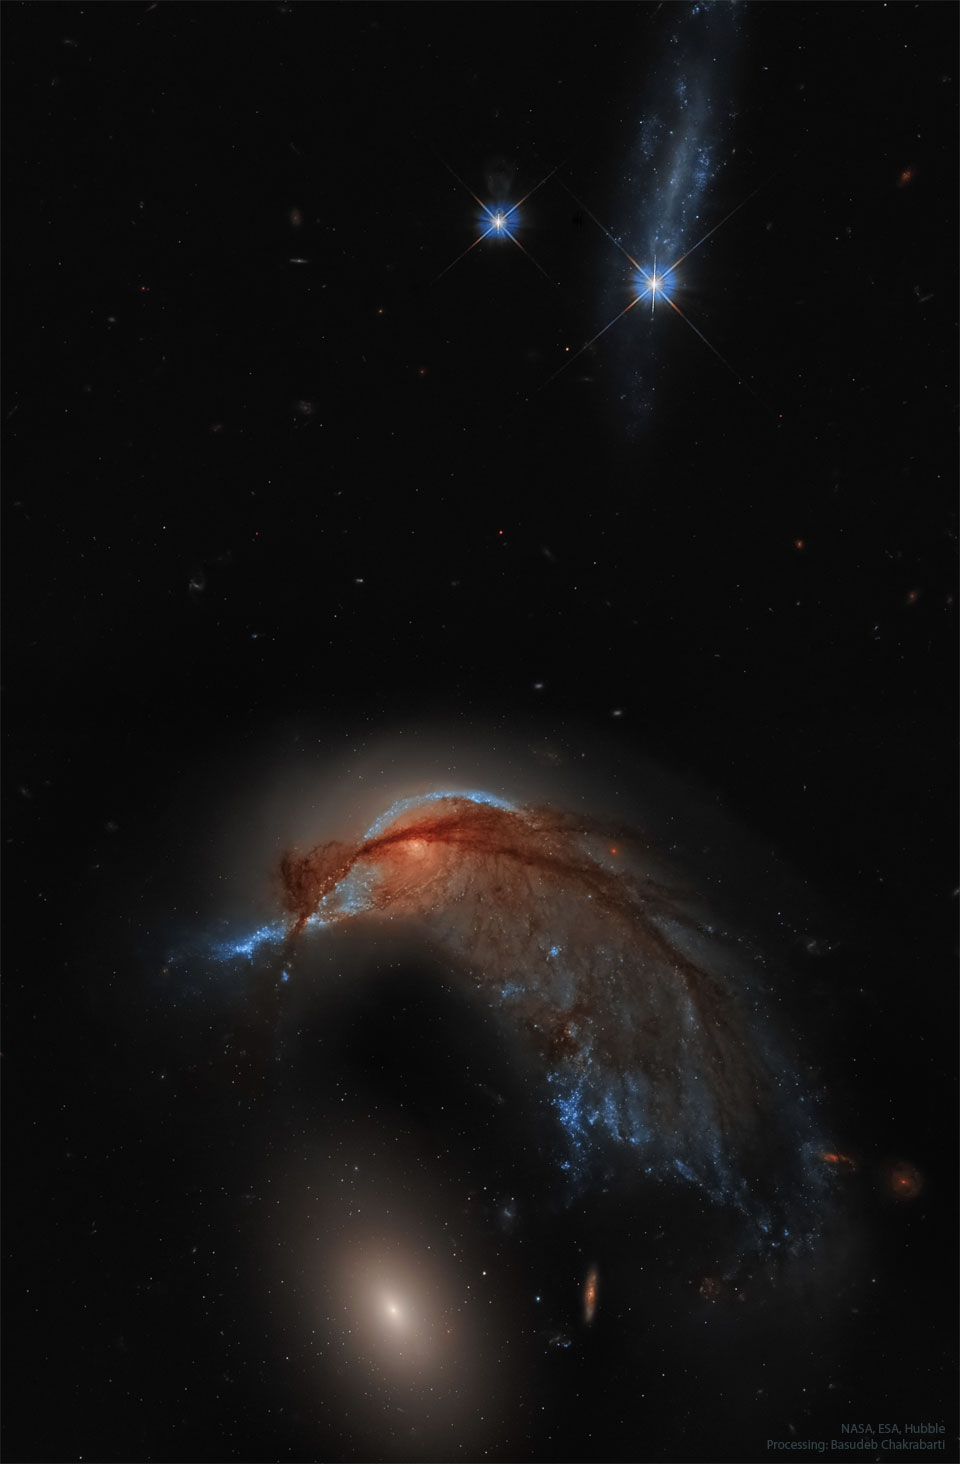 Na zdjęciu widzoczne jest pole gwiazd z dwiema jasnymi
gwiazdami na górze kadru i dwiema galaktykami na dole. Górna
galaktyka jest galaktyką spiralną, której wygląd przypomina kolibra.
Dolna galaktyka to zwykła galaktyka eliptyczna
Zobacz opis. Po kliknięciu obrazka załaduje się wersja o największej
dostępnej rozdzielczości.